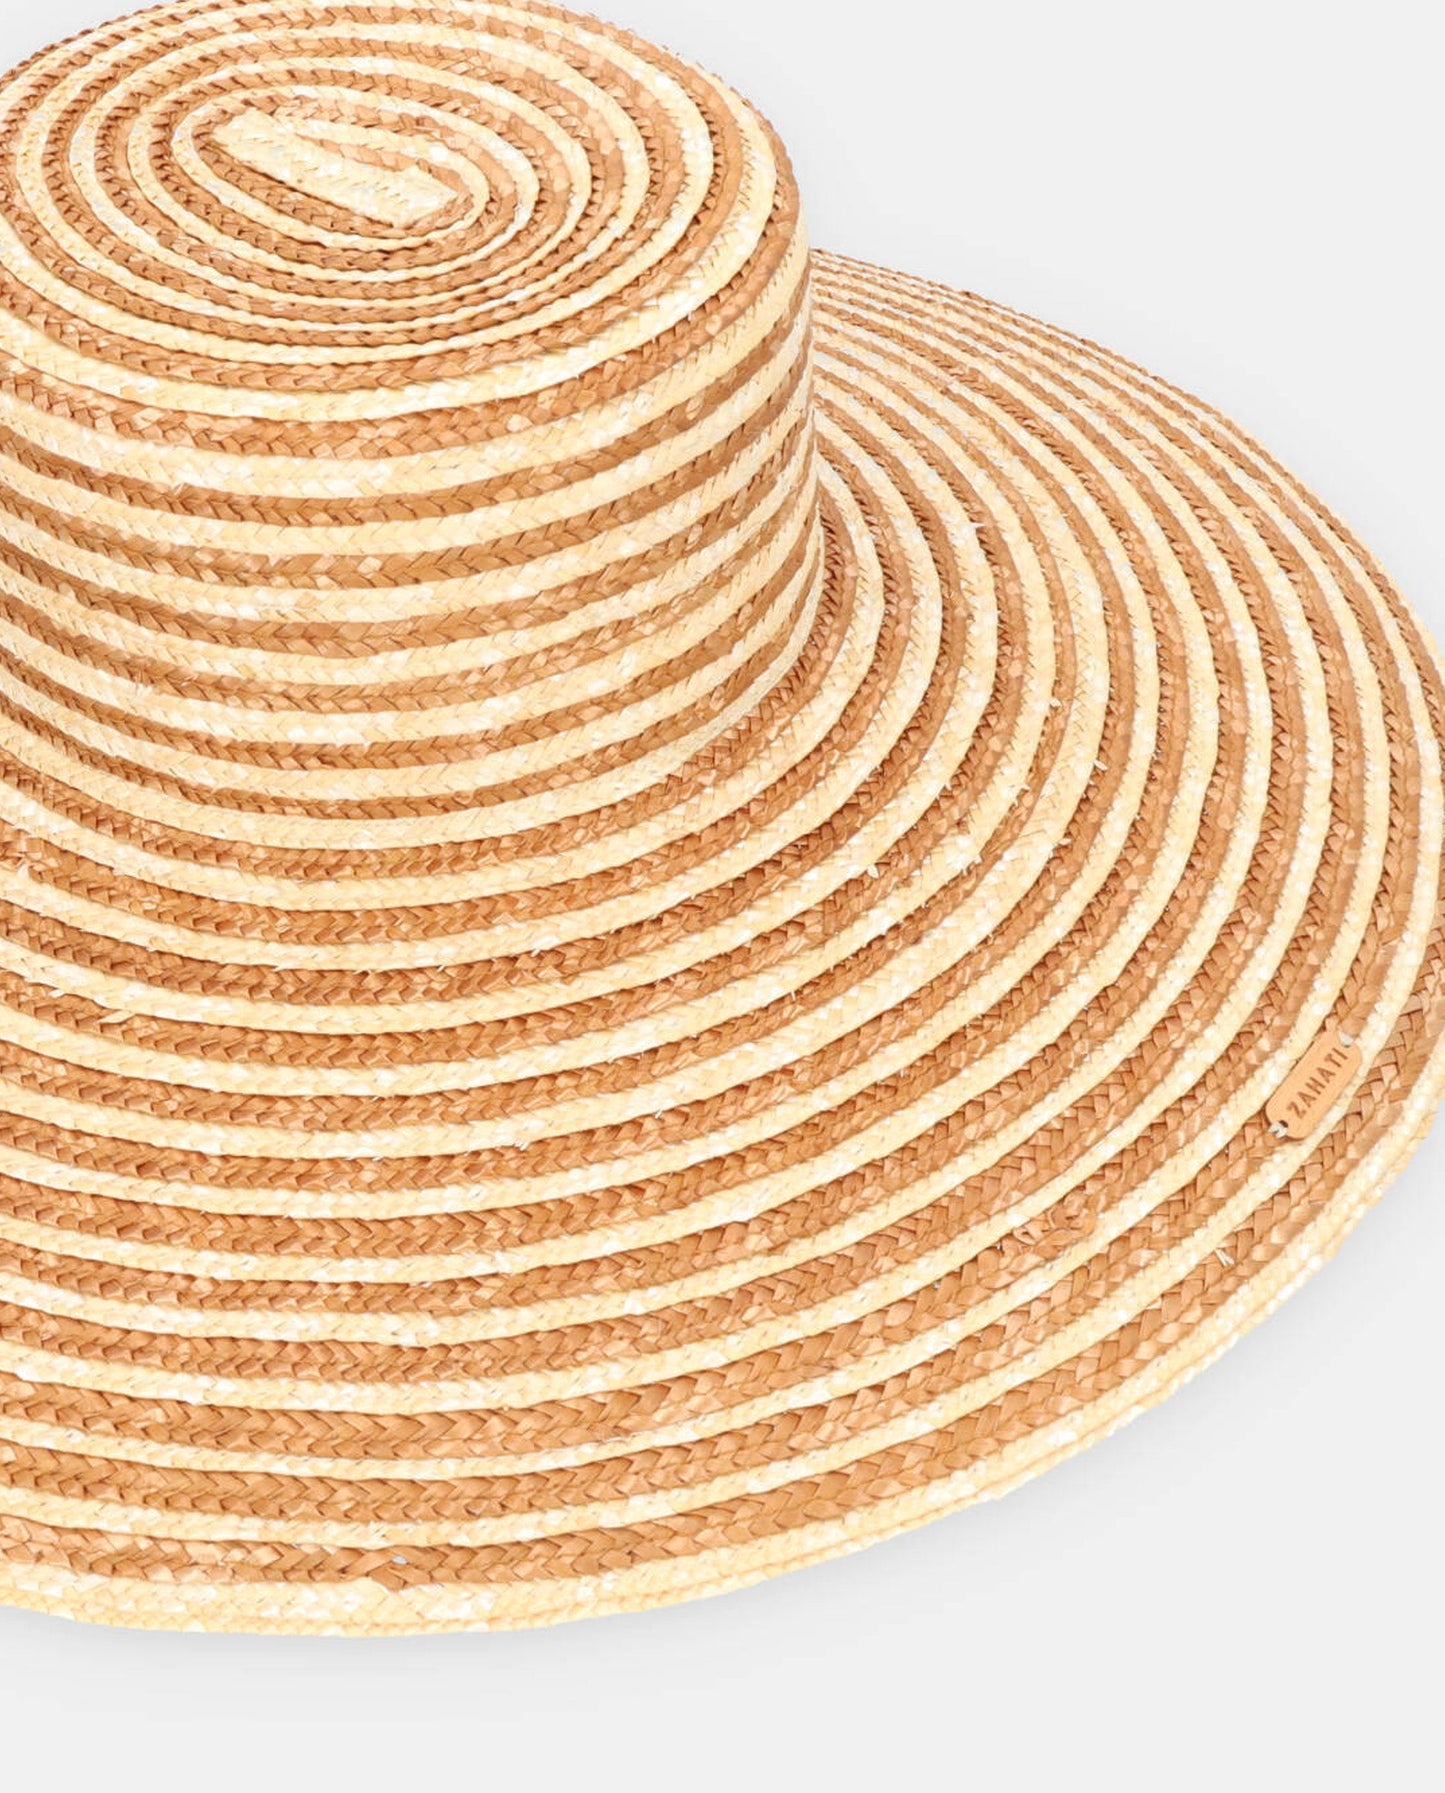 Cuchi spiral camel hat with L brim